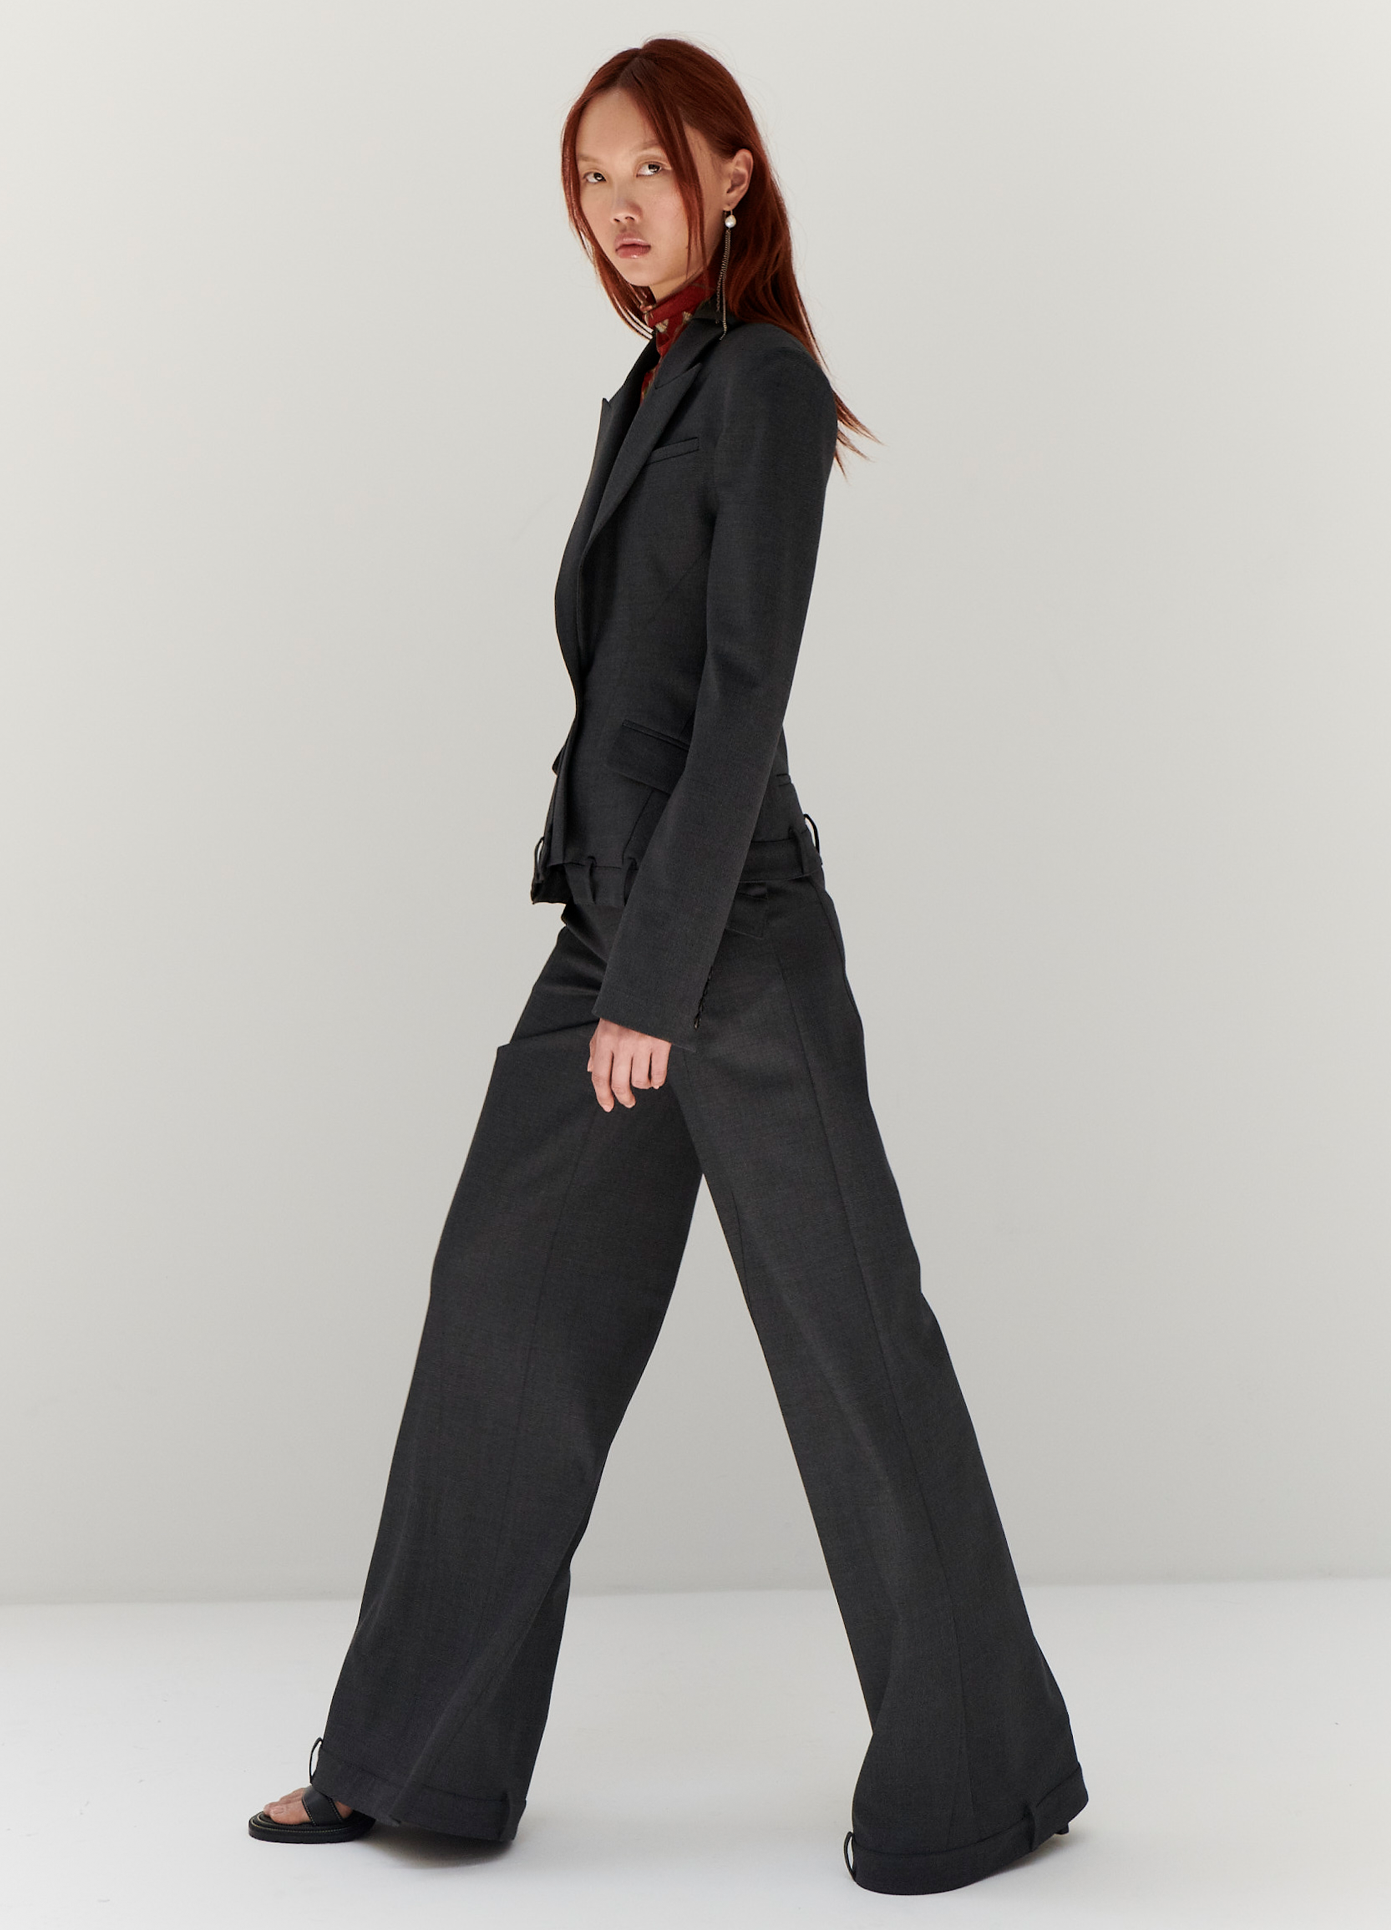 MONSE Upside Down Trouser in Charcoal on model walking full side view